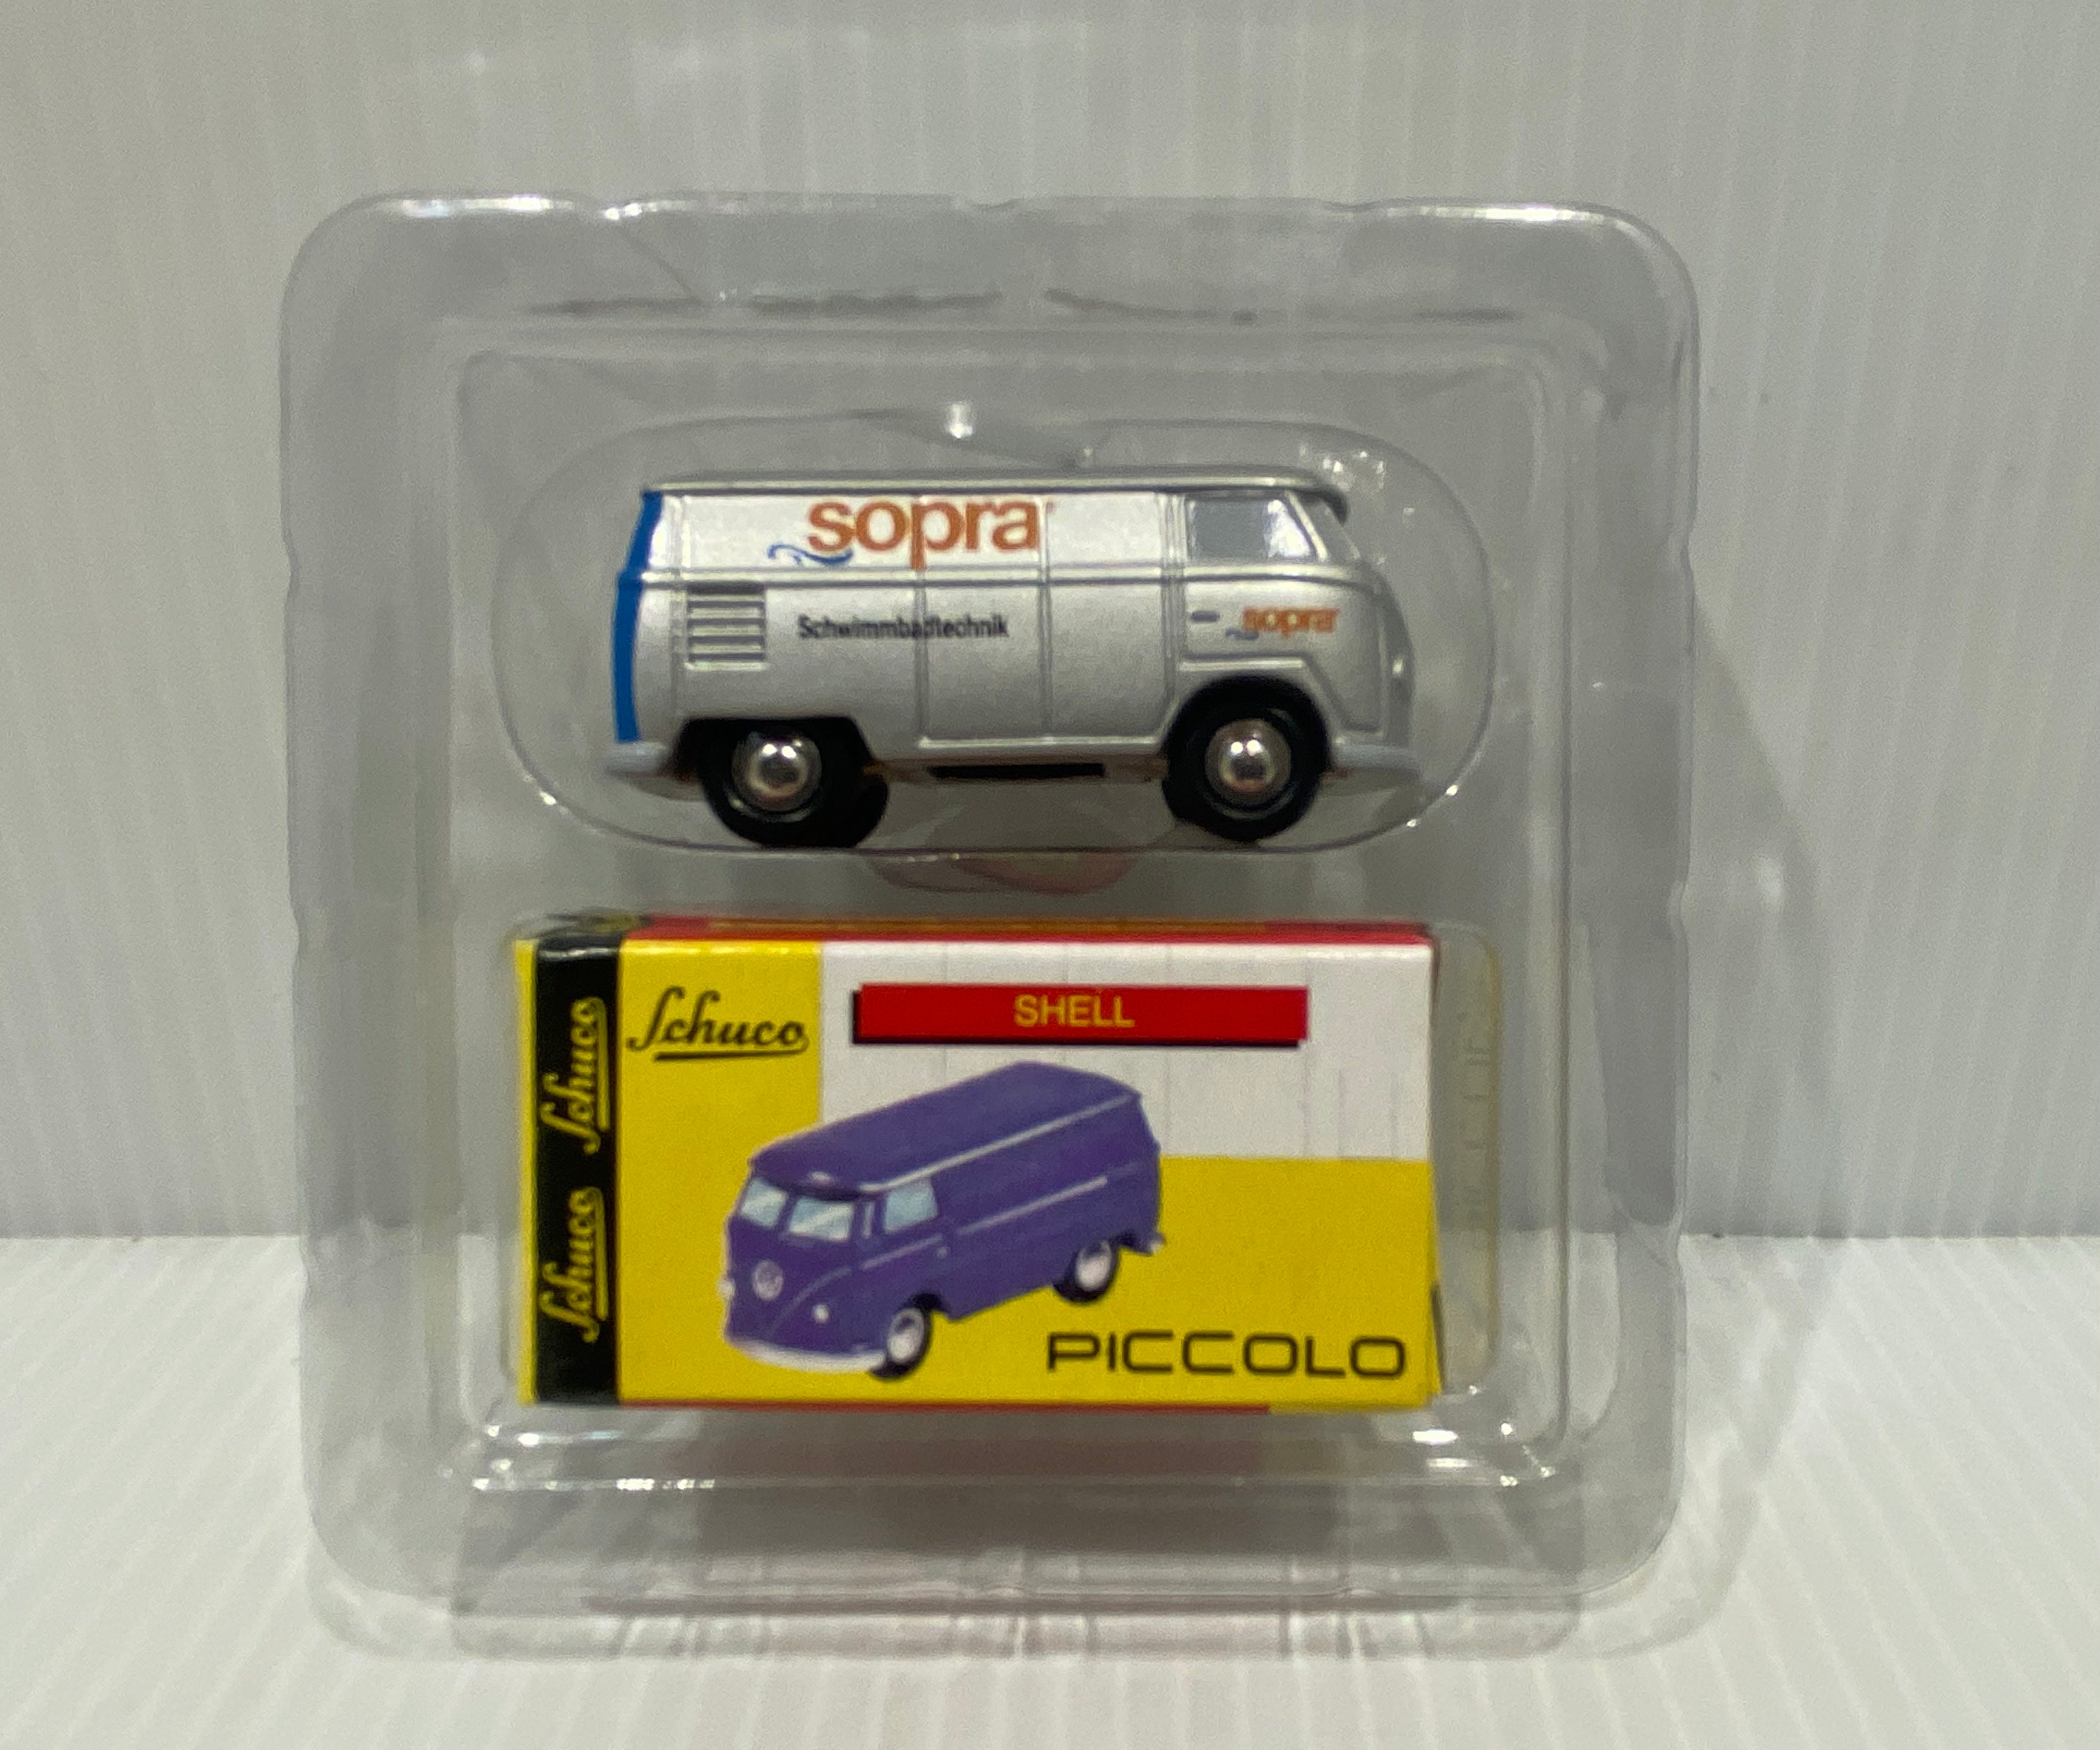 Schuco Piccolo Volkswagen T2 Sopra. Limited Edition